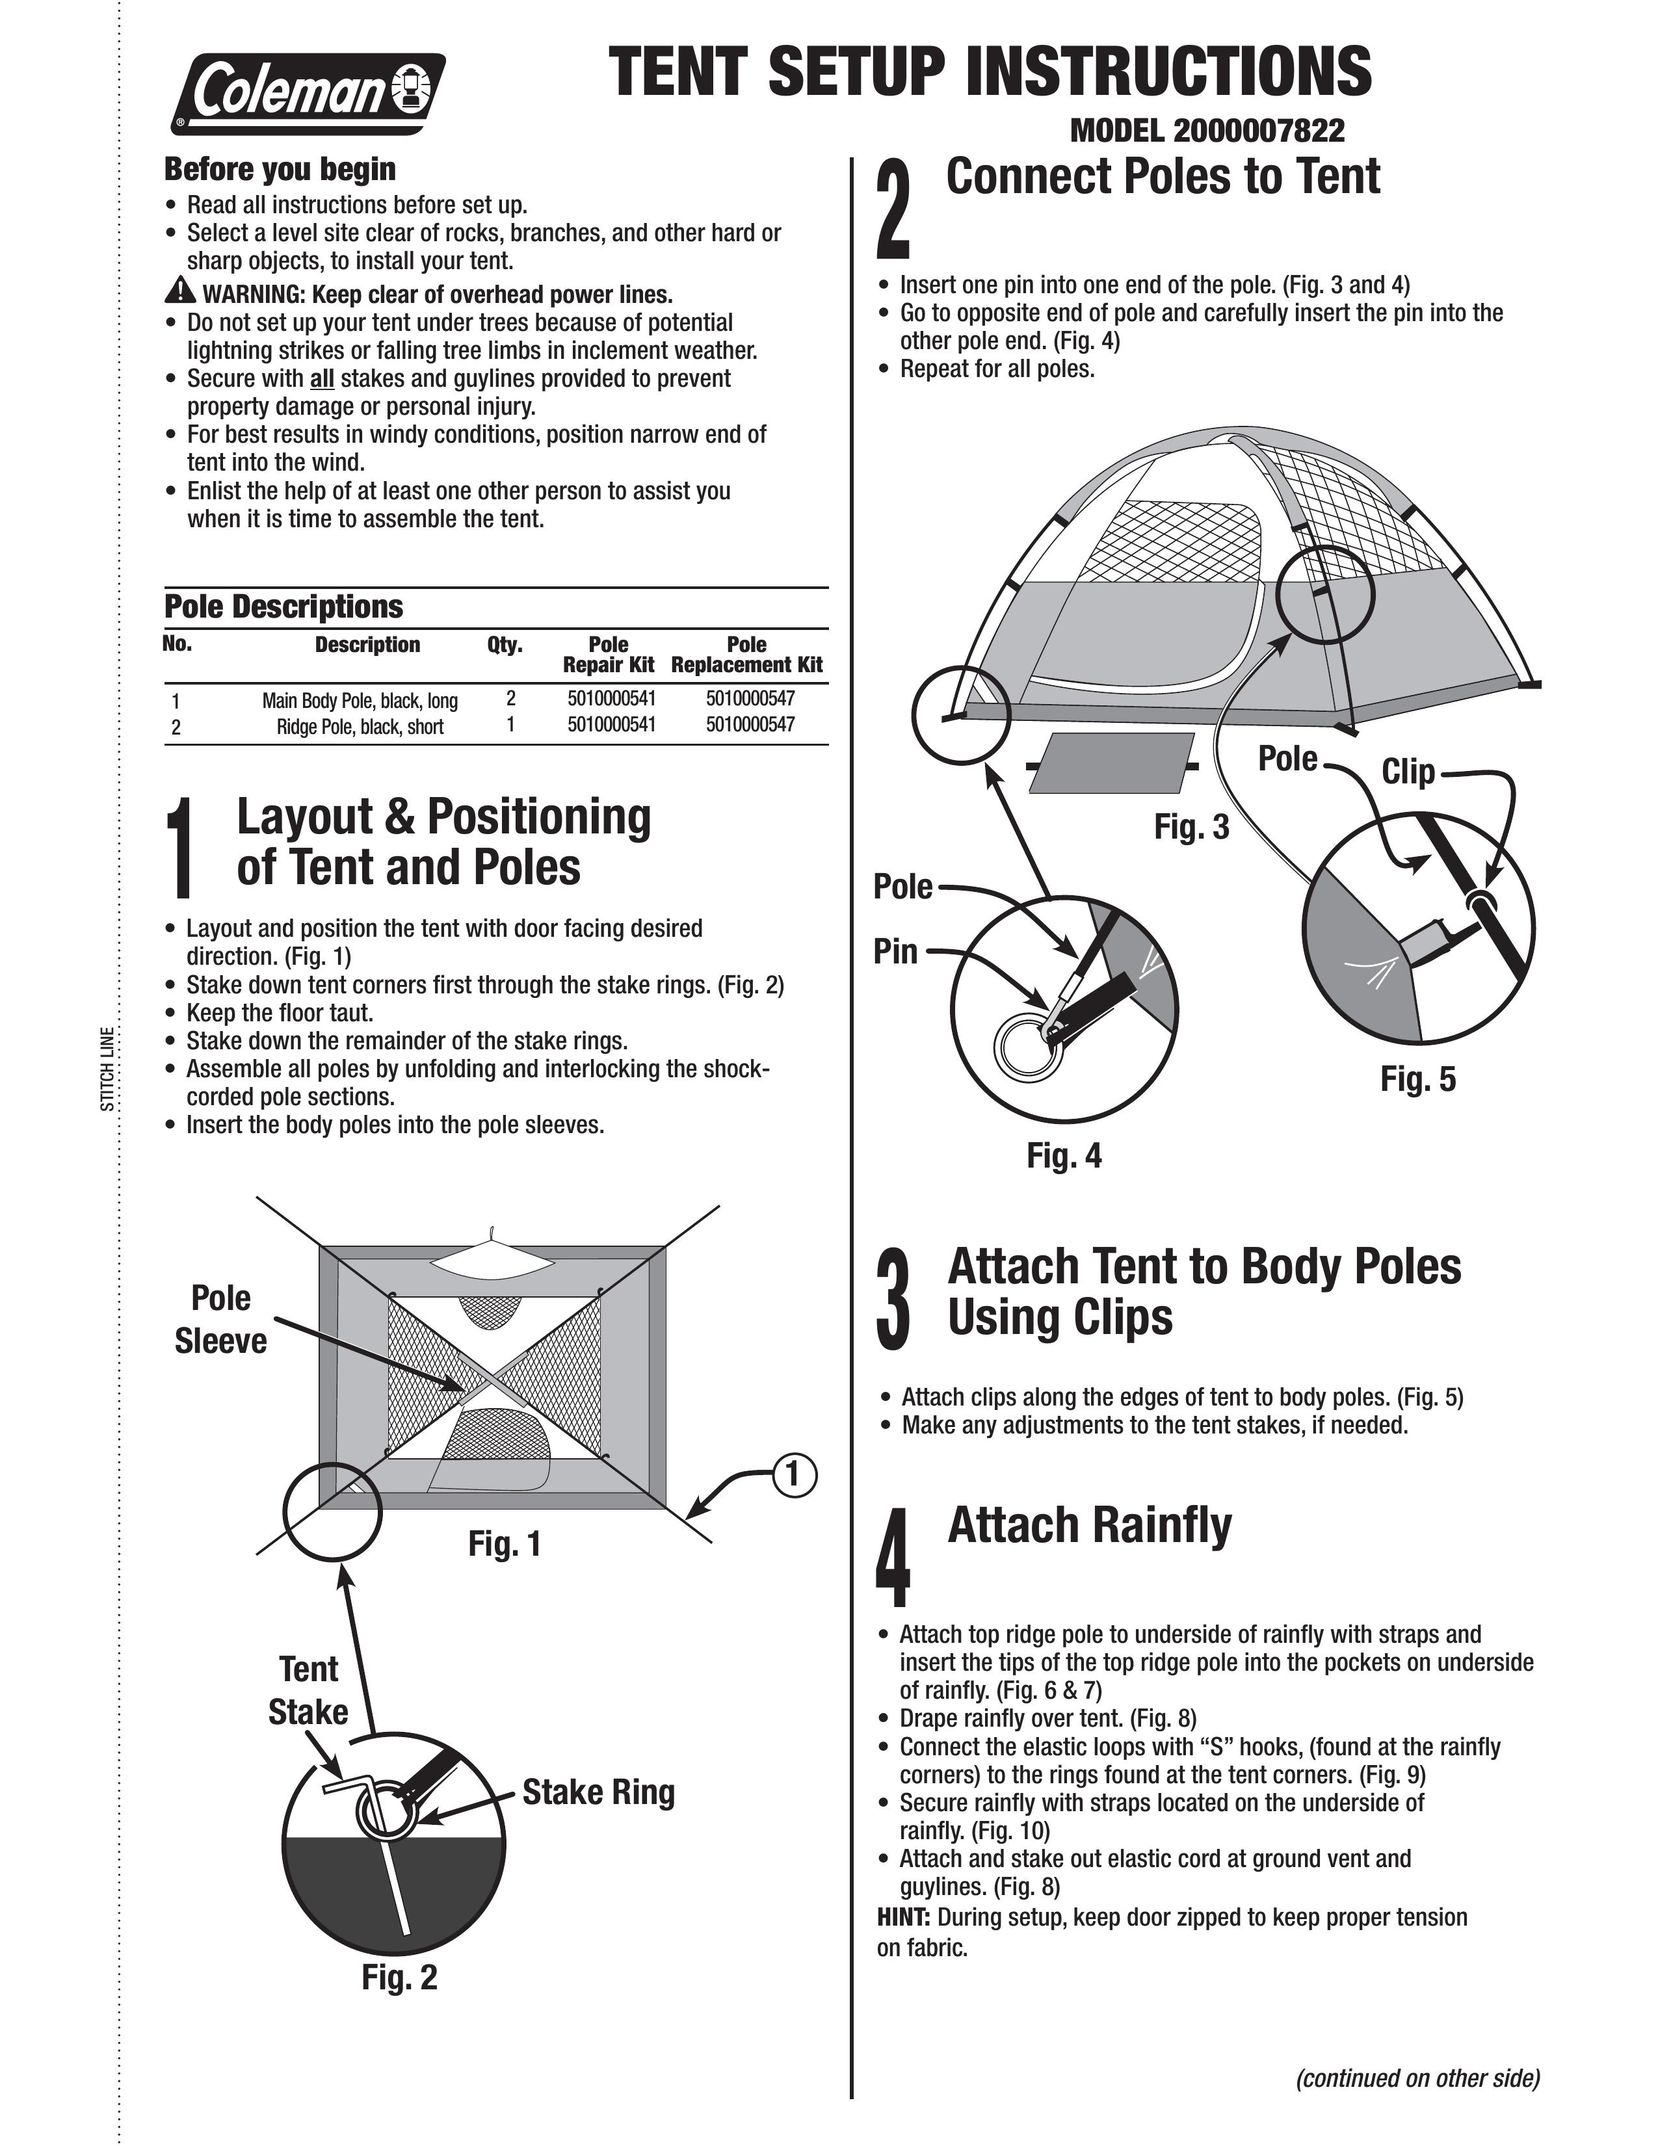 Coleman 2000007822 Tent User Manual